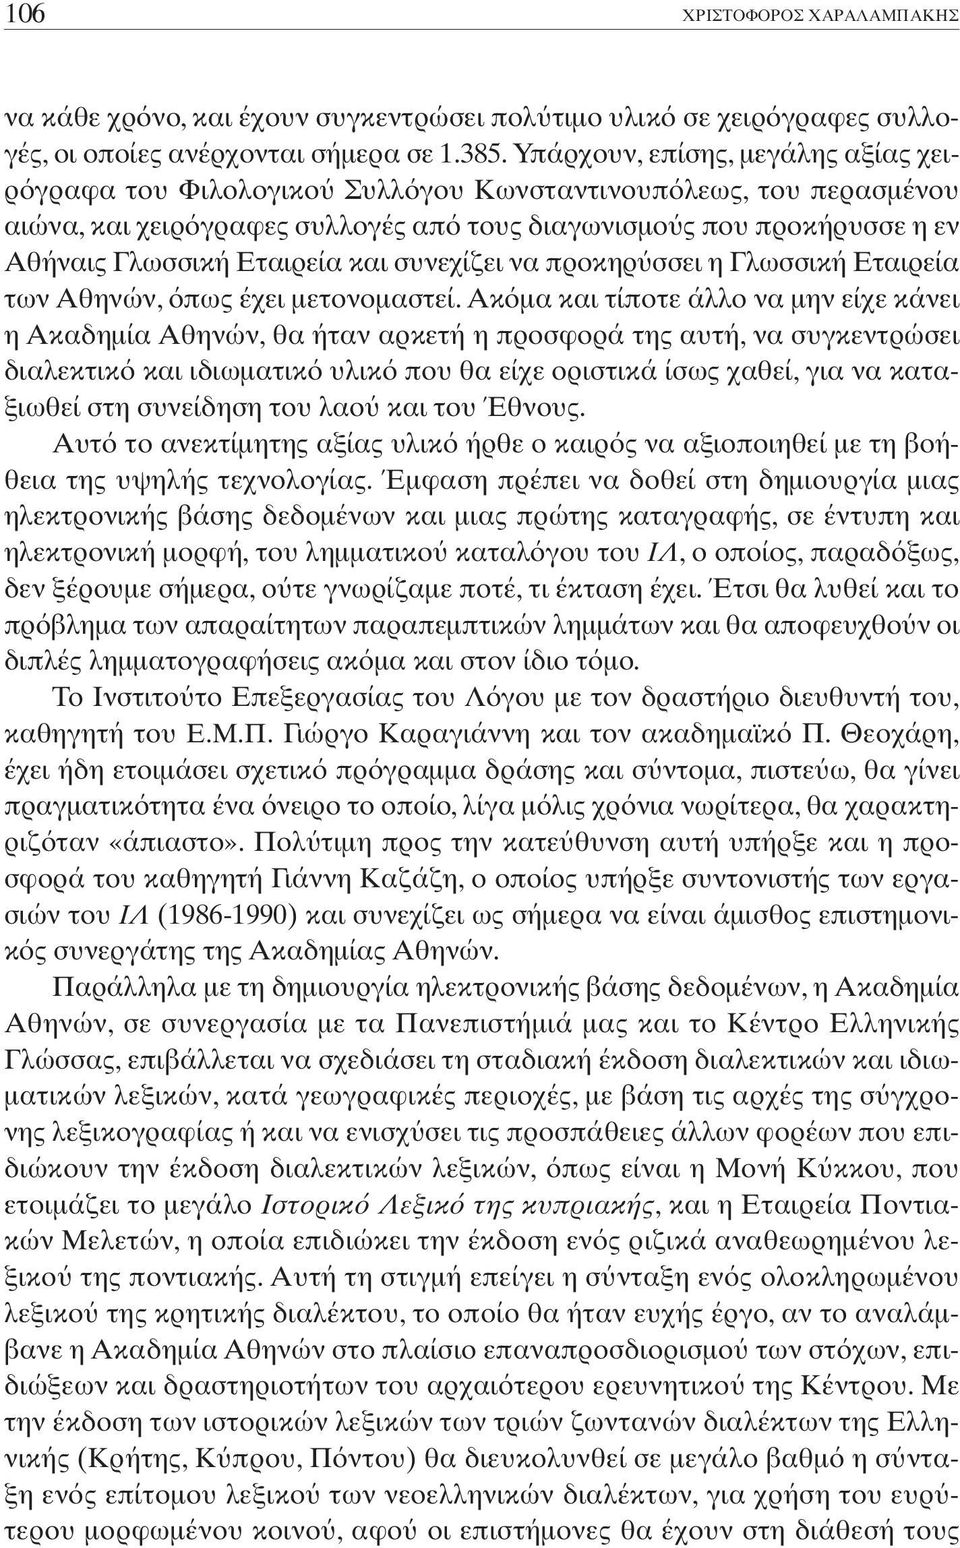 Εταιρεία και συνεχίζει να προκηρ σσει η Γλωσσική Εταιρεία των Αθηνών, πως έχει µετονοµαστεί.